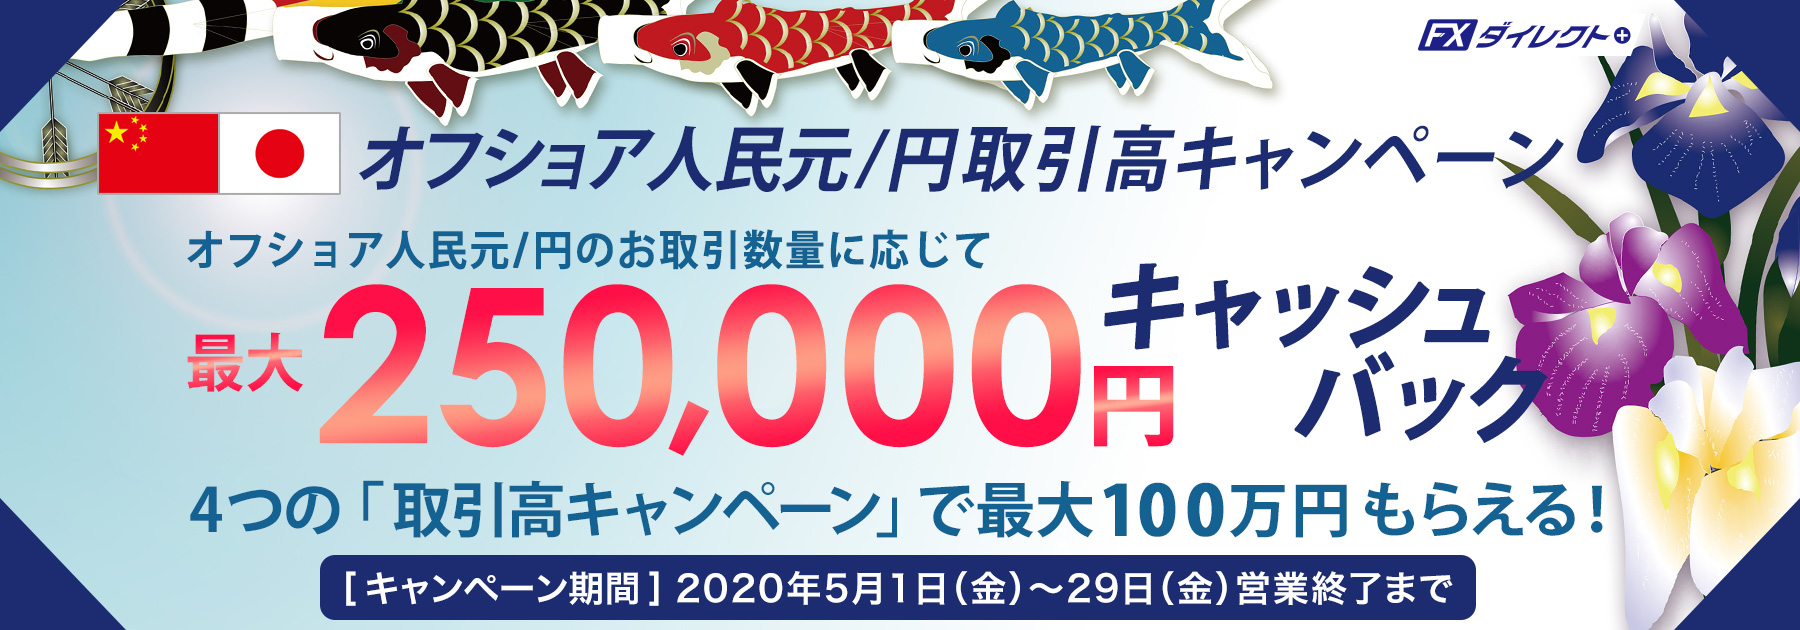 最大25万円キャッシュバックキャンペーン